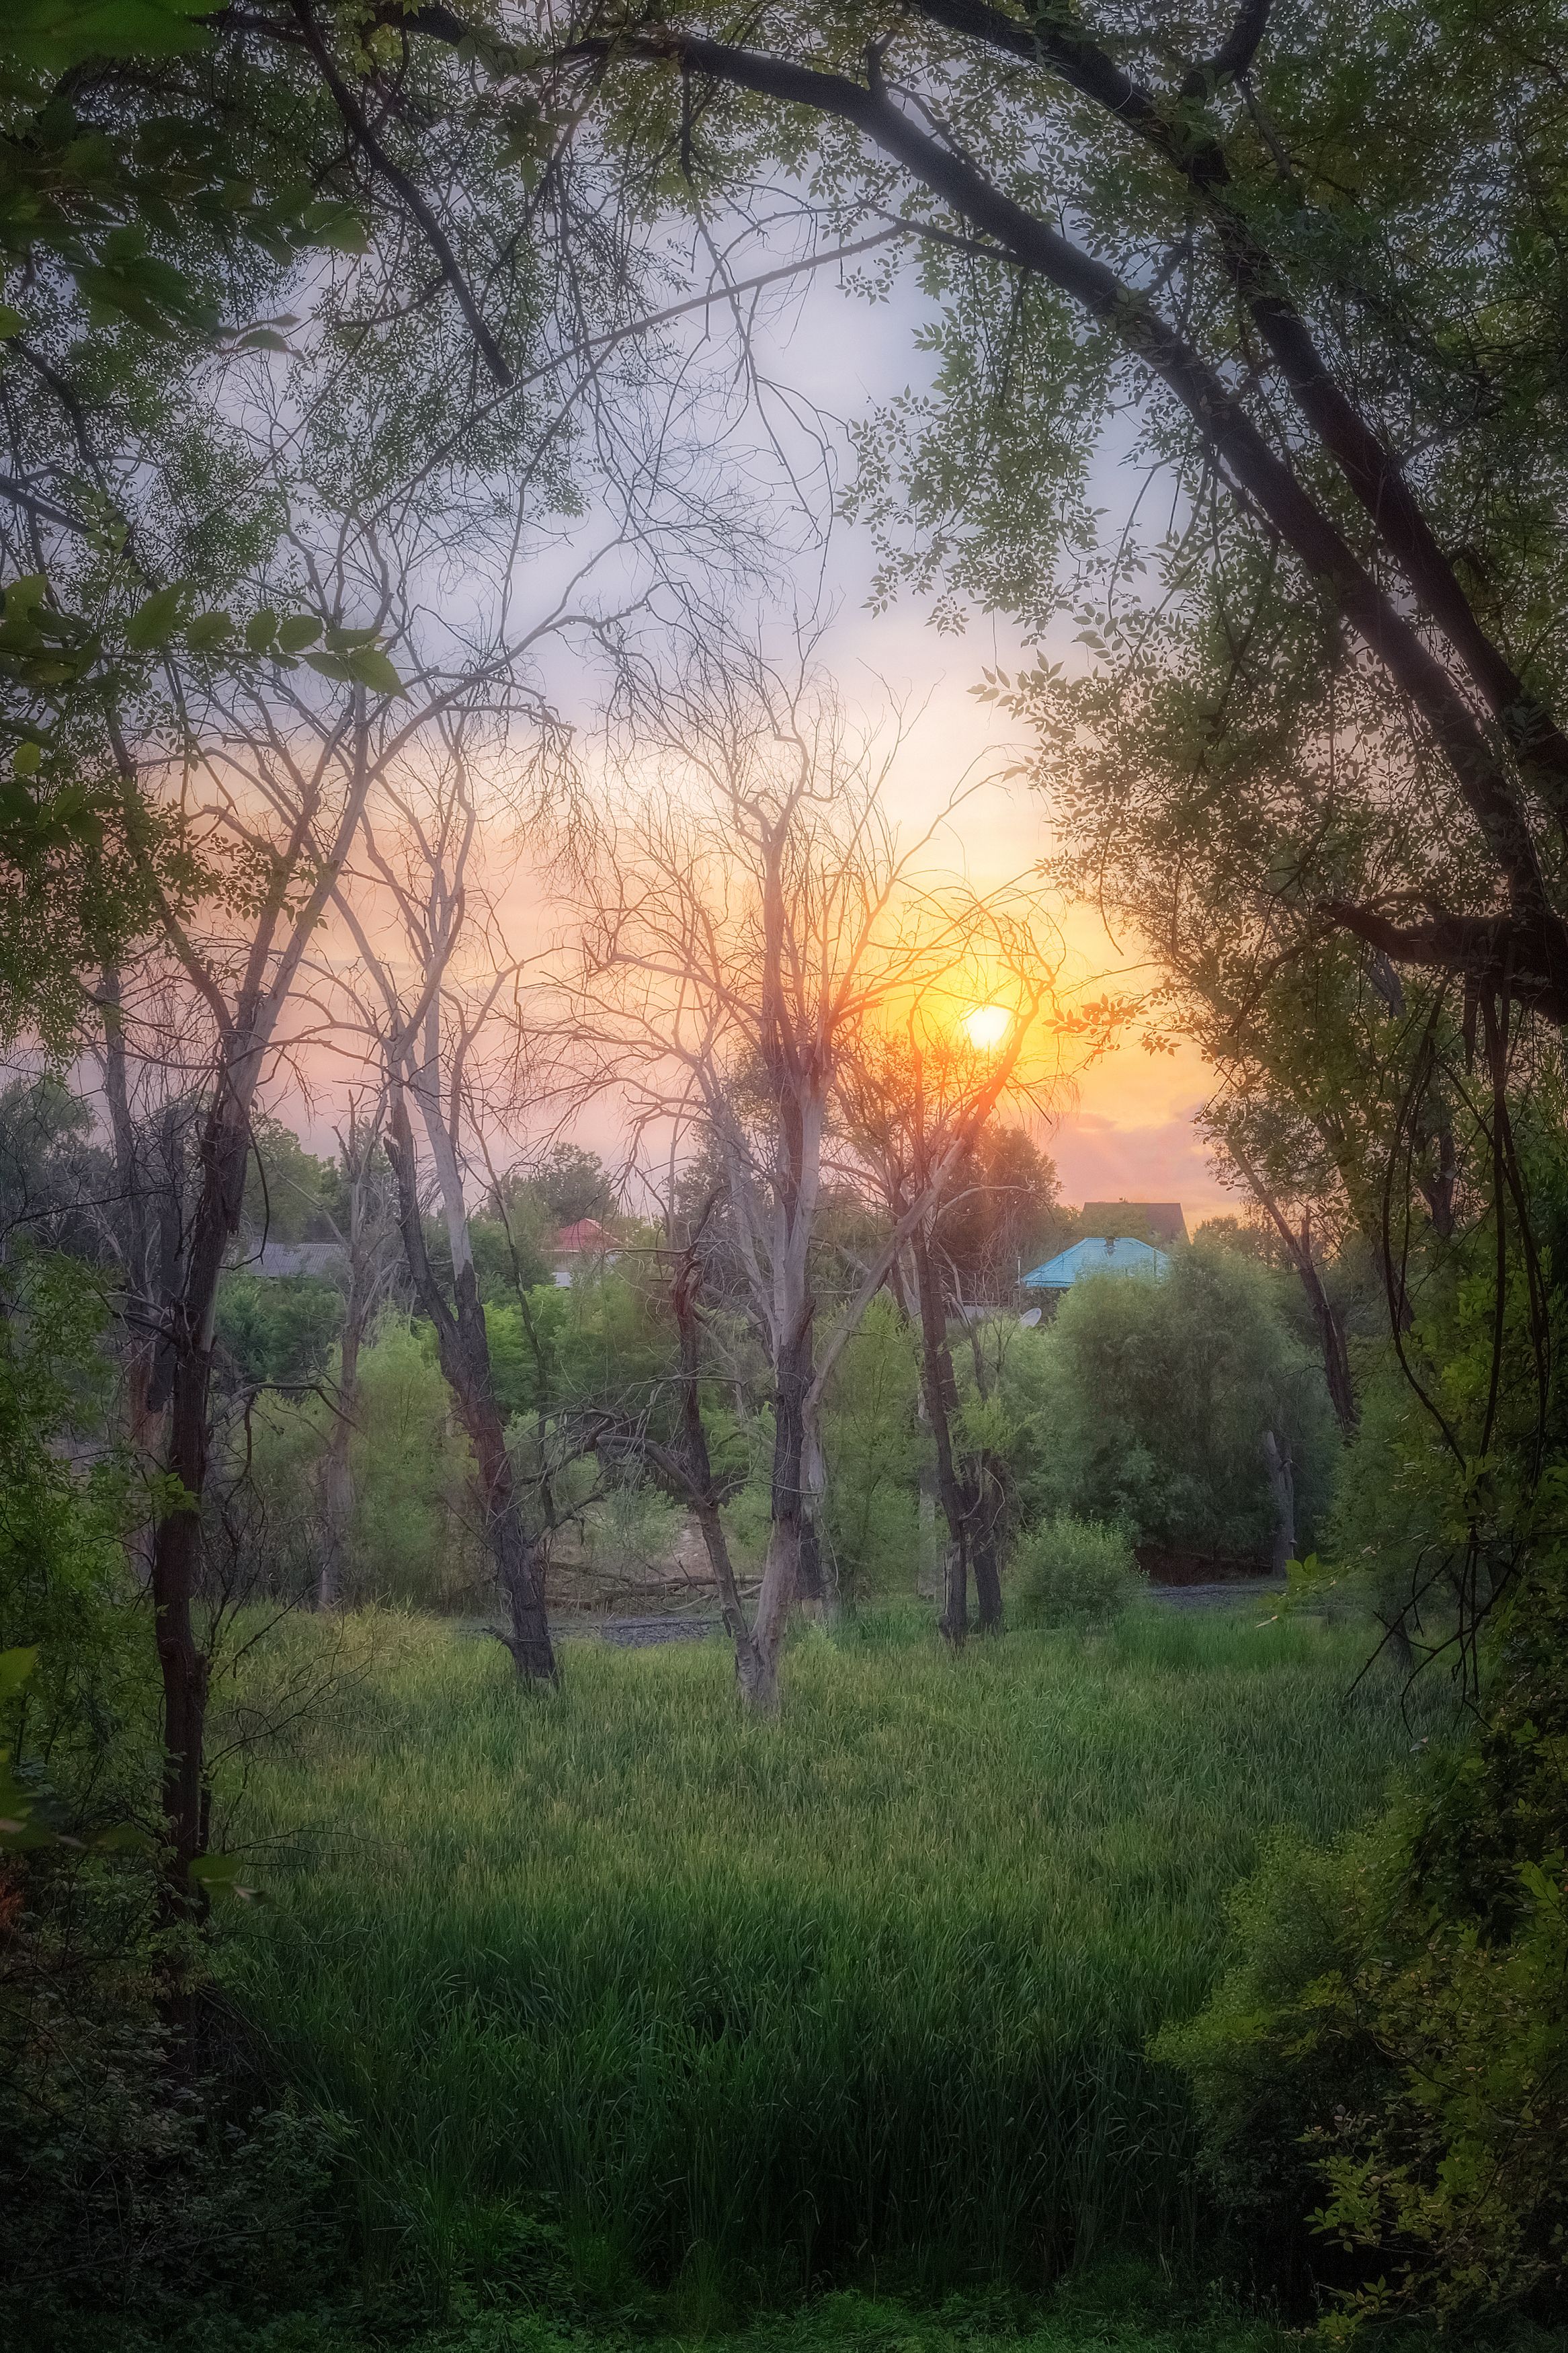 вечер солнце пейзаж фотография лето жара деревья зелень, Еремеев Дмитрий